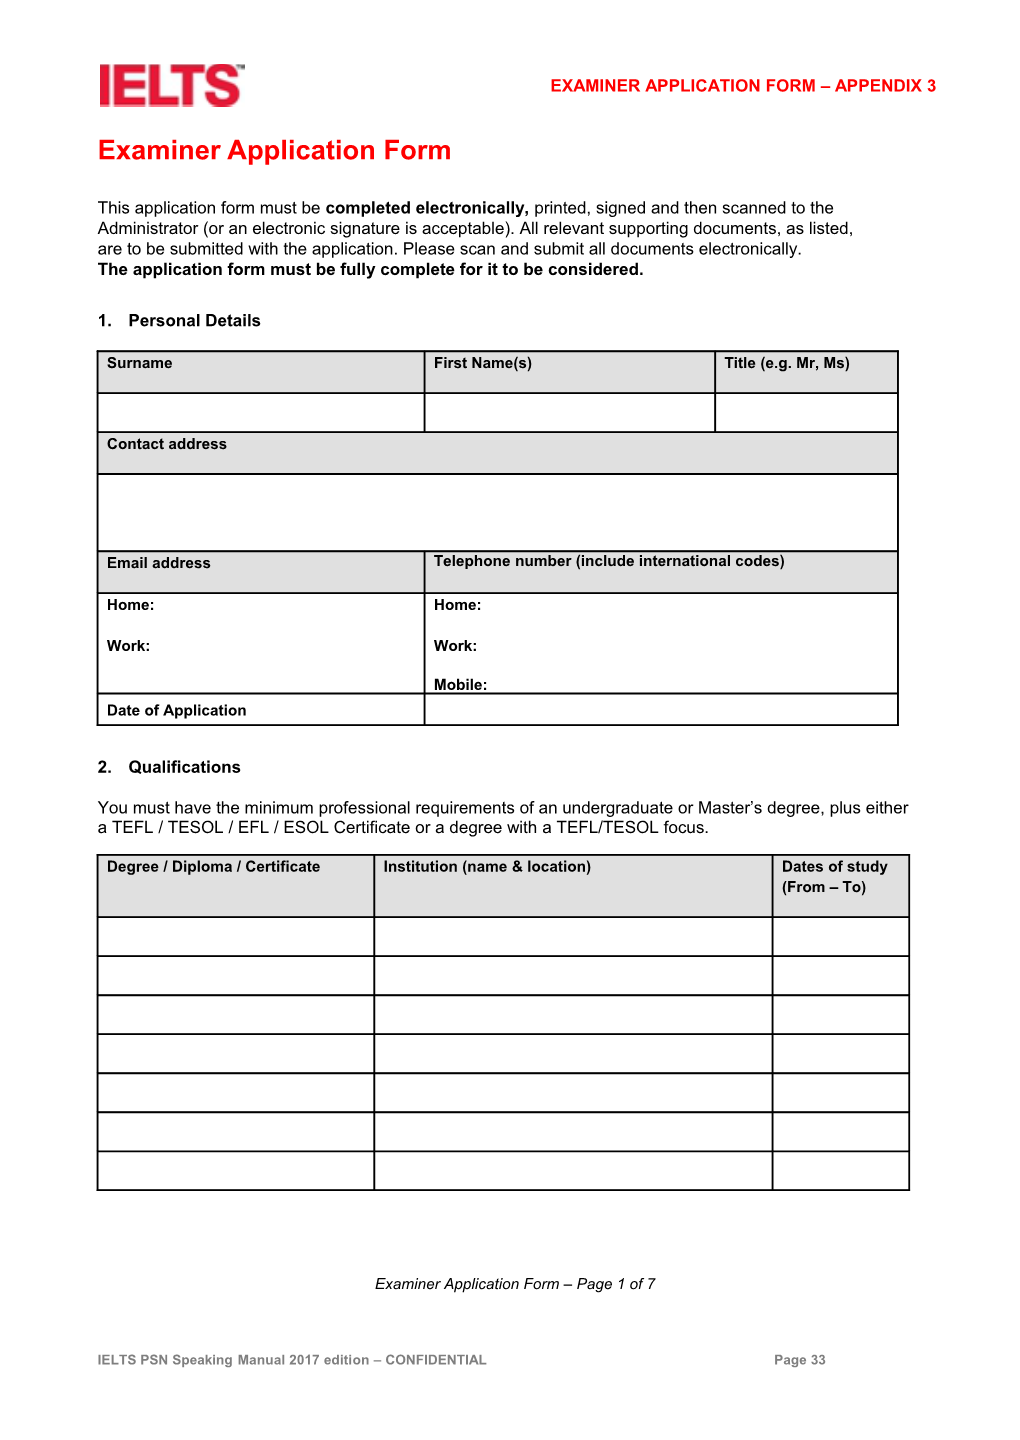 Examiner Application Form